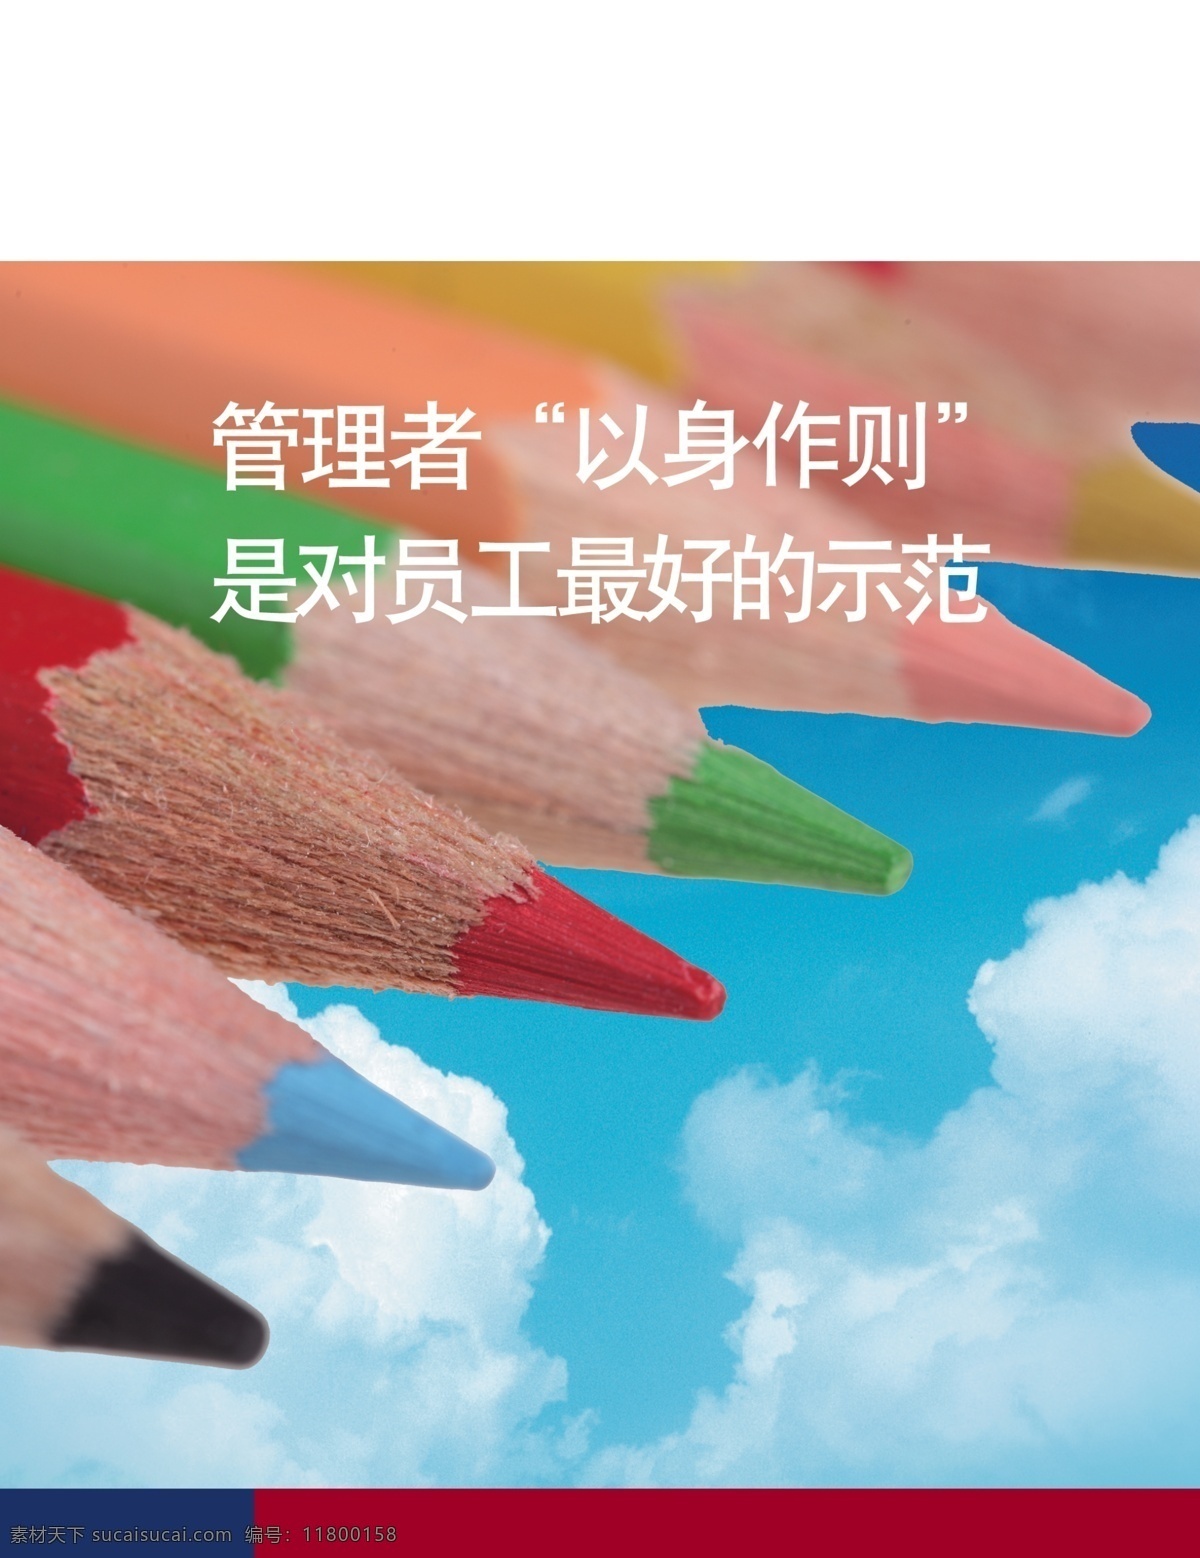 管理者 以身作则 白云 管理 蓝天 铅笔 五彩铅笔 展板 企业文化展板